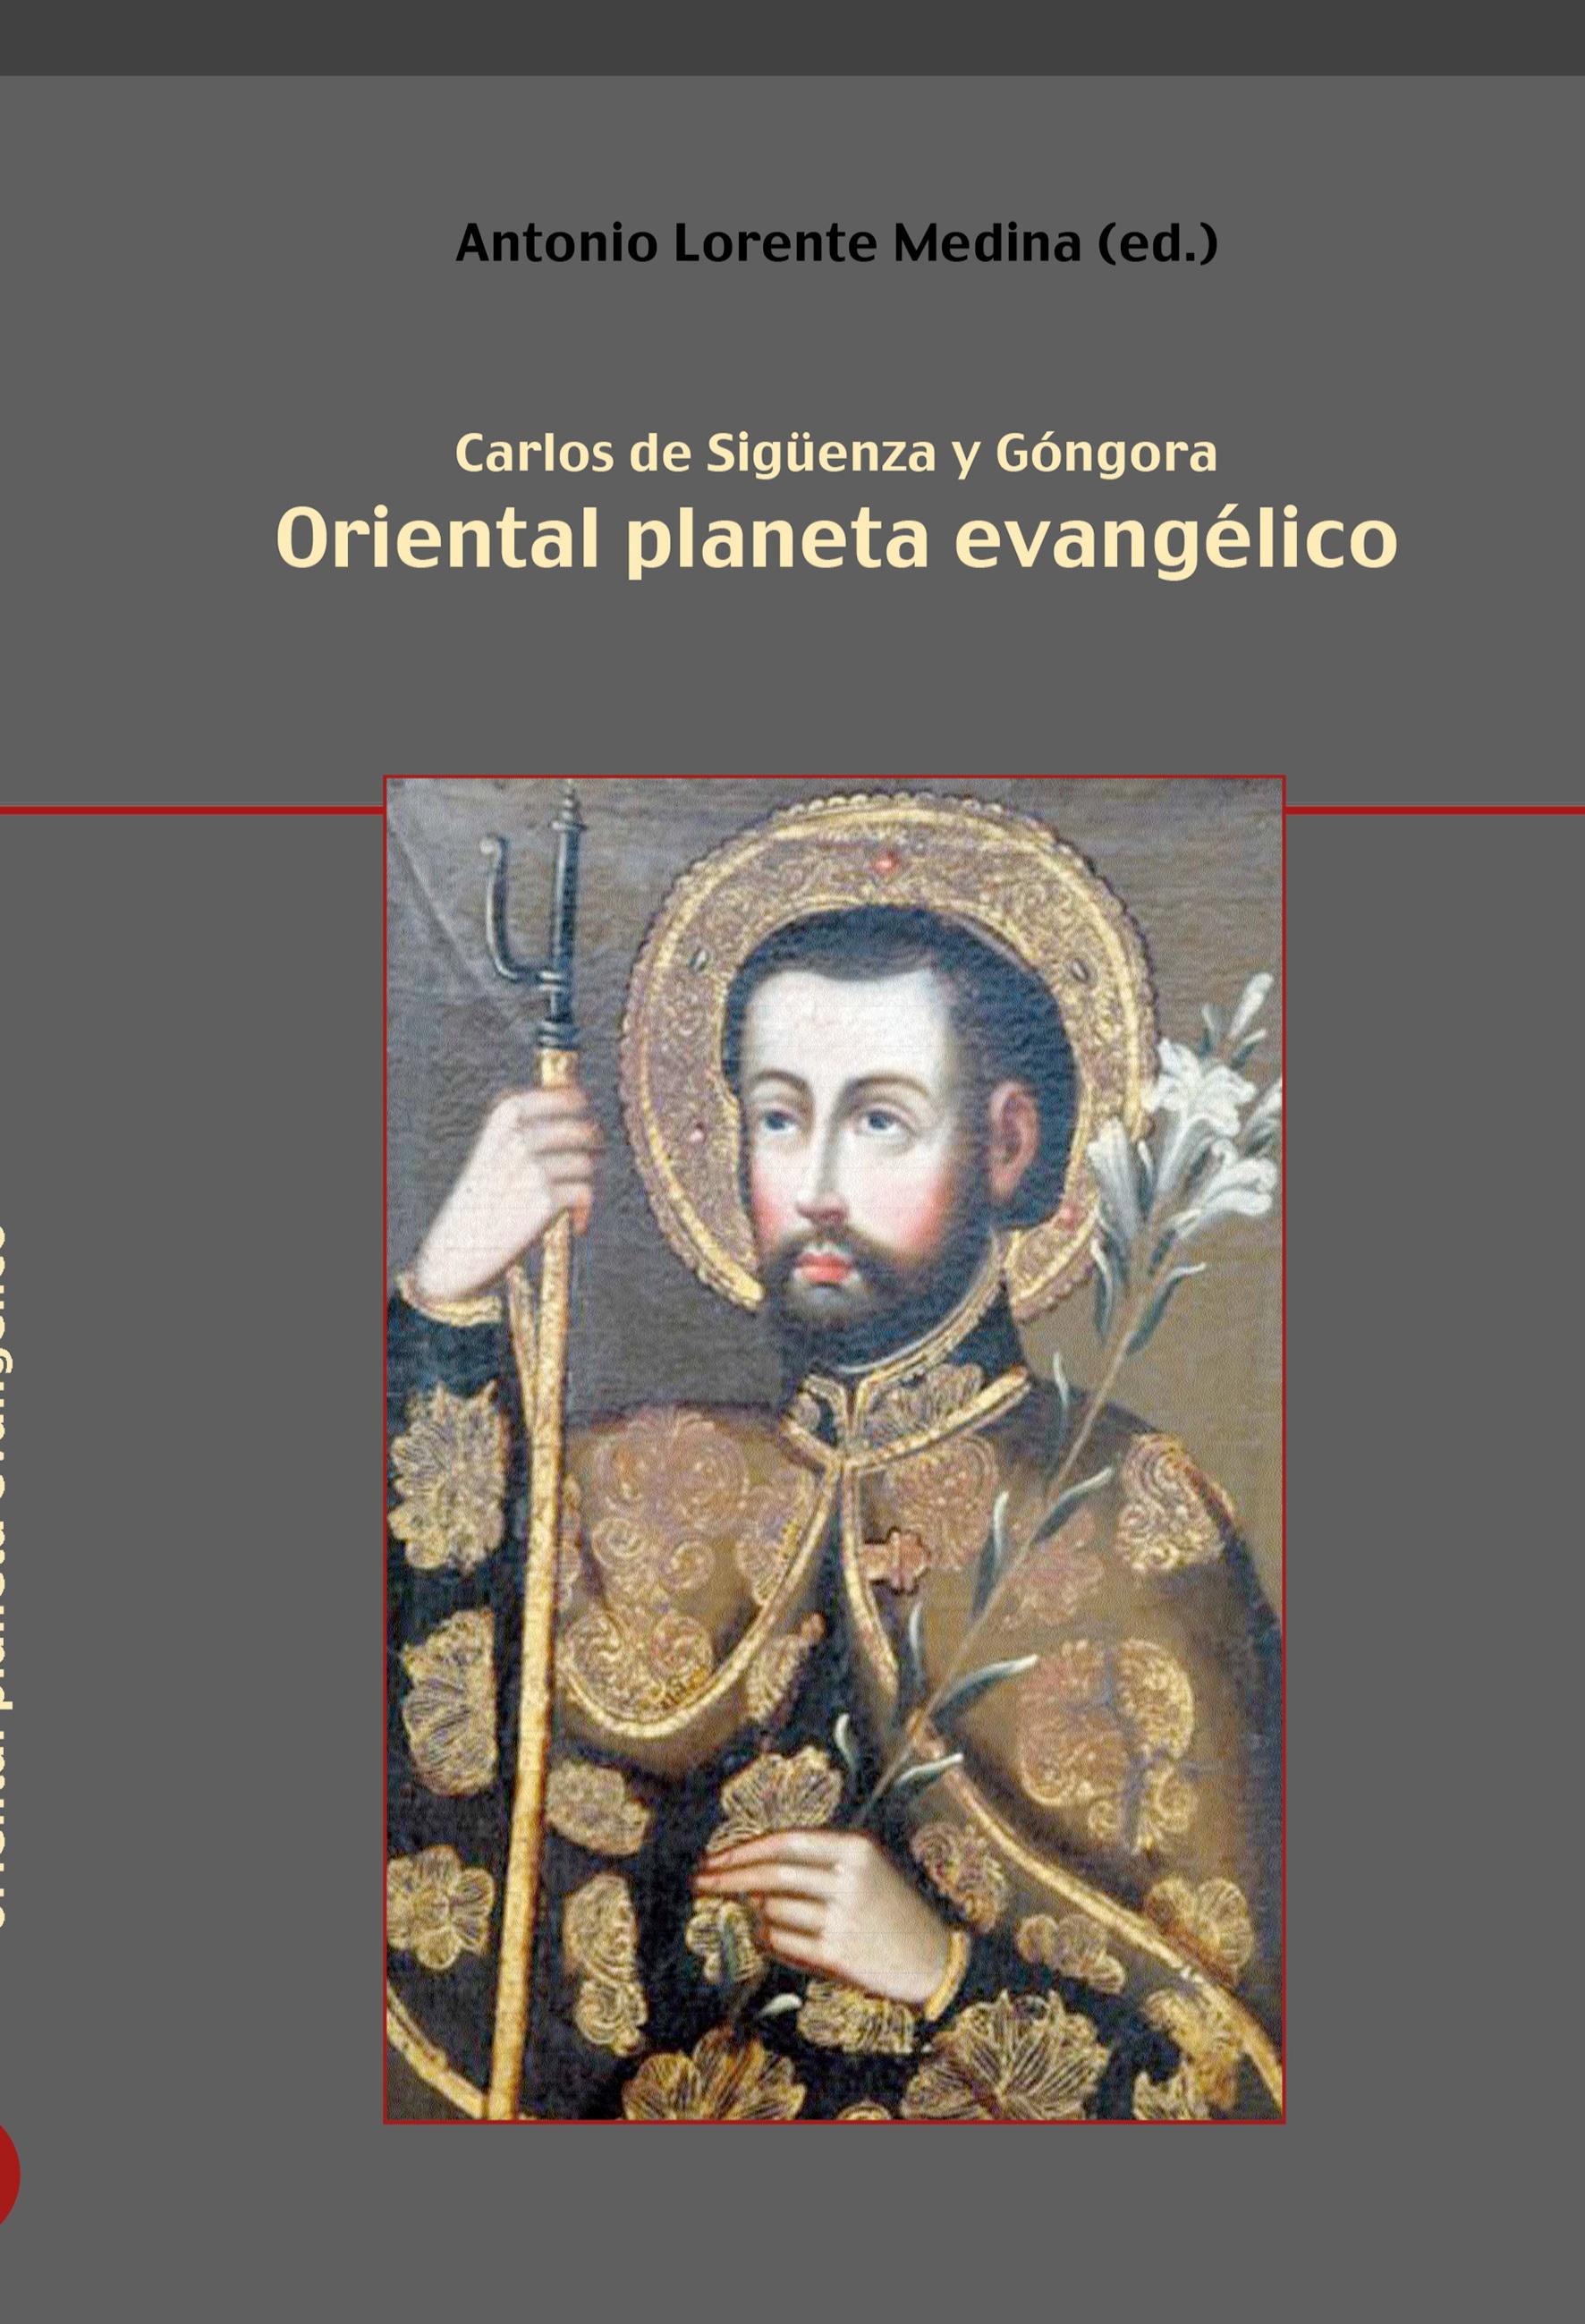 Oriental planeta evangélico - Lorente Medina, Antonio Sigueenza y Góngora, Carlos de